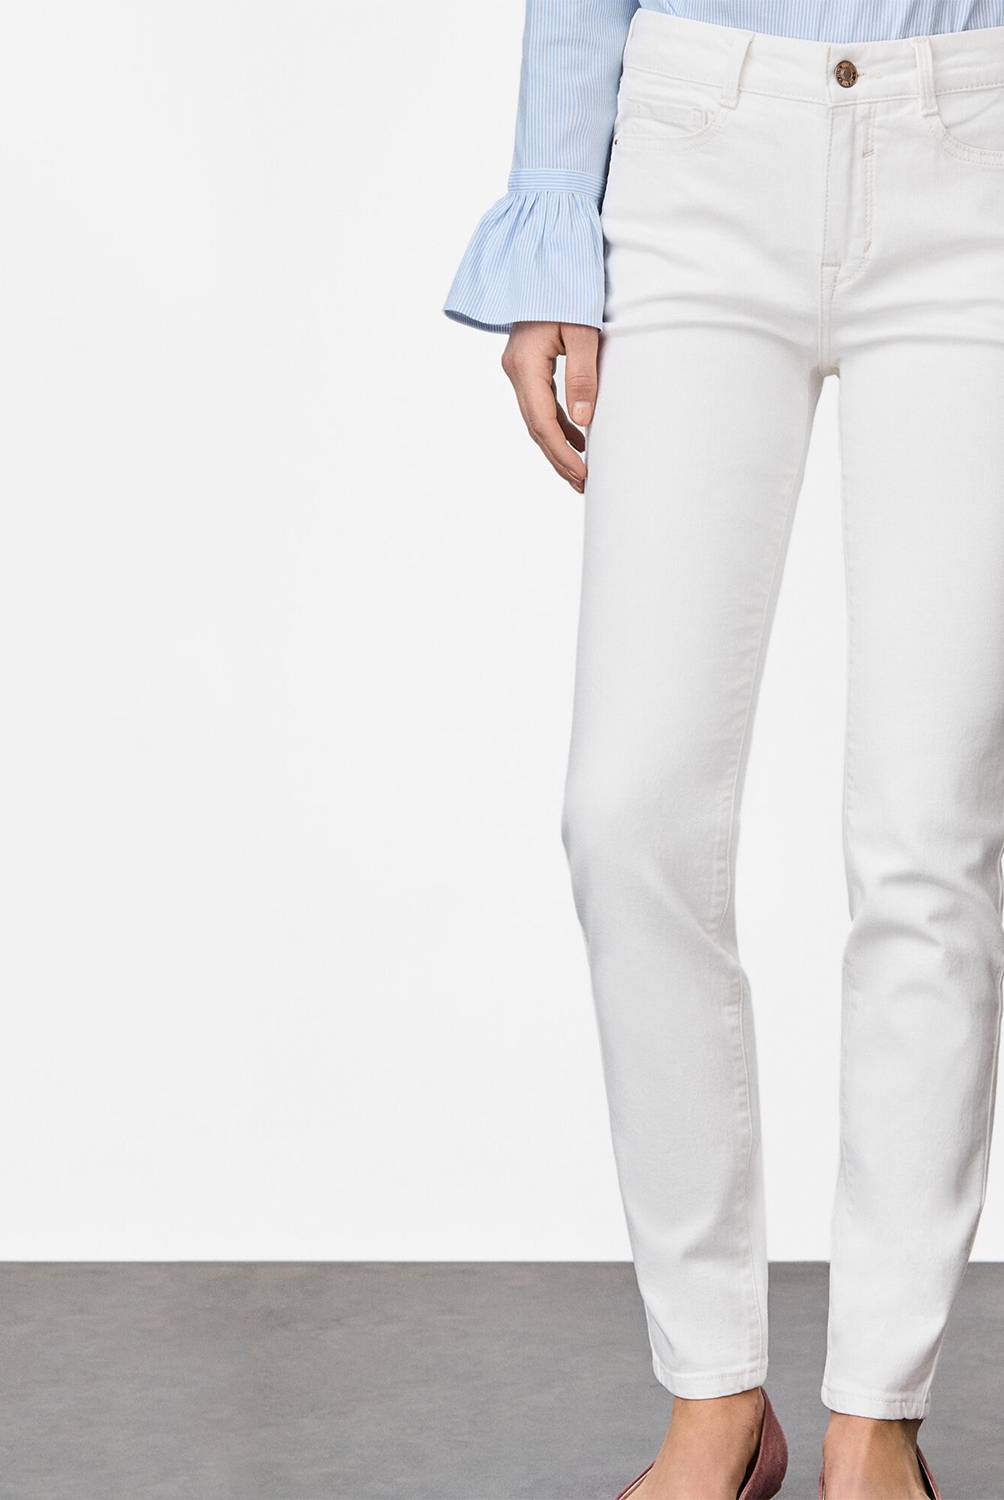 CORTEFIEL - Jeans de Algodón Mujer